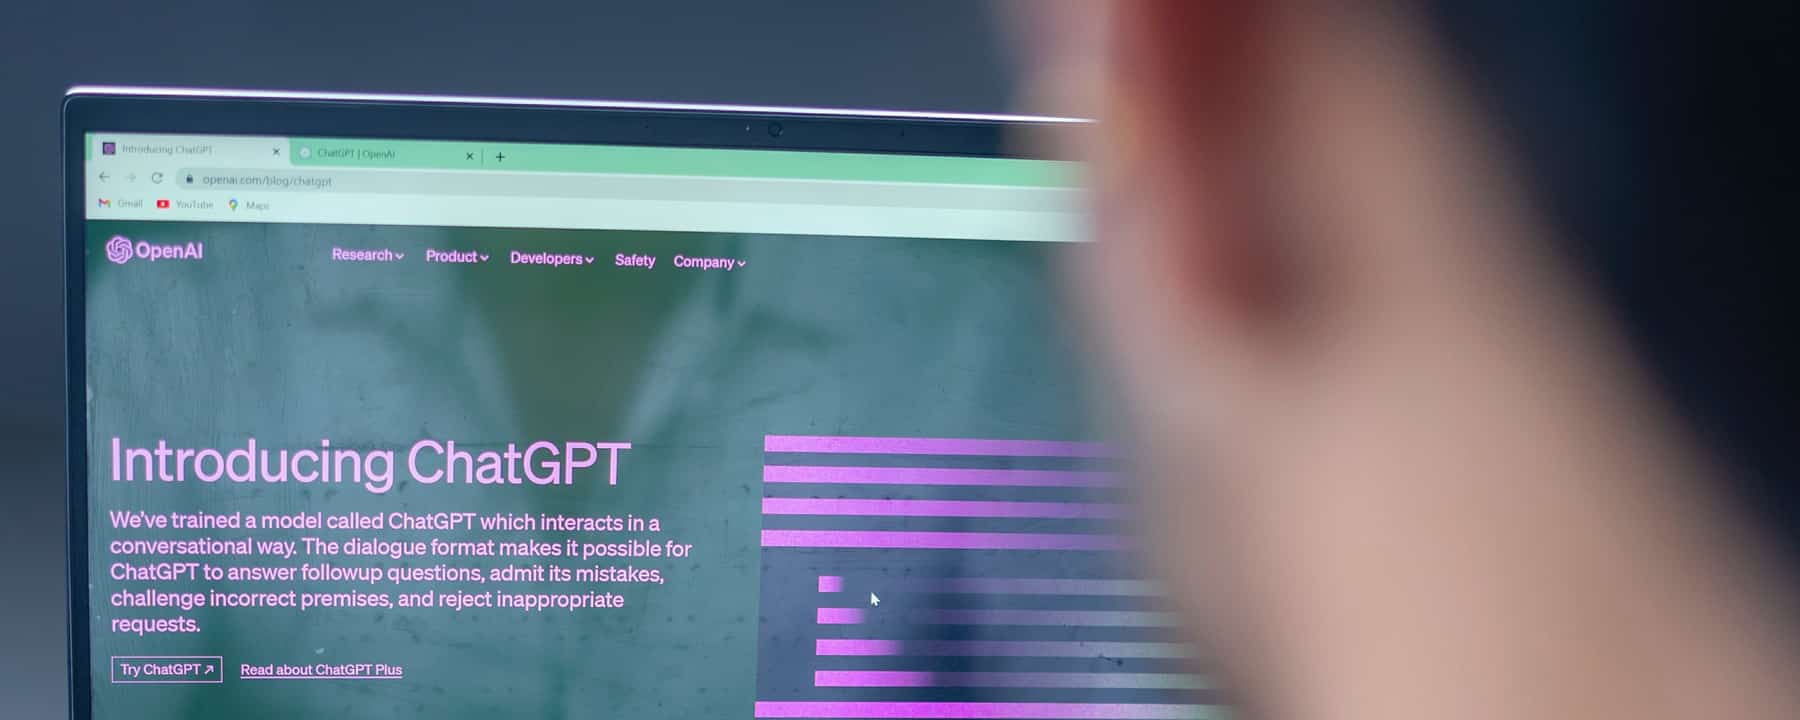 ChatGPT und Digital Asset Management - Symbolbild zeigt Mann, der ChatGPT auf Laptop verwendet